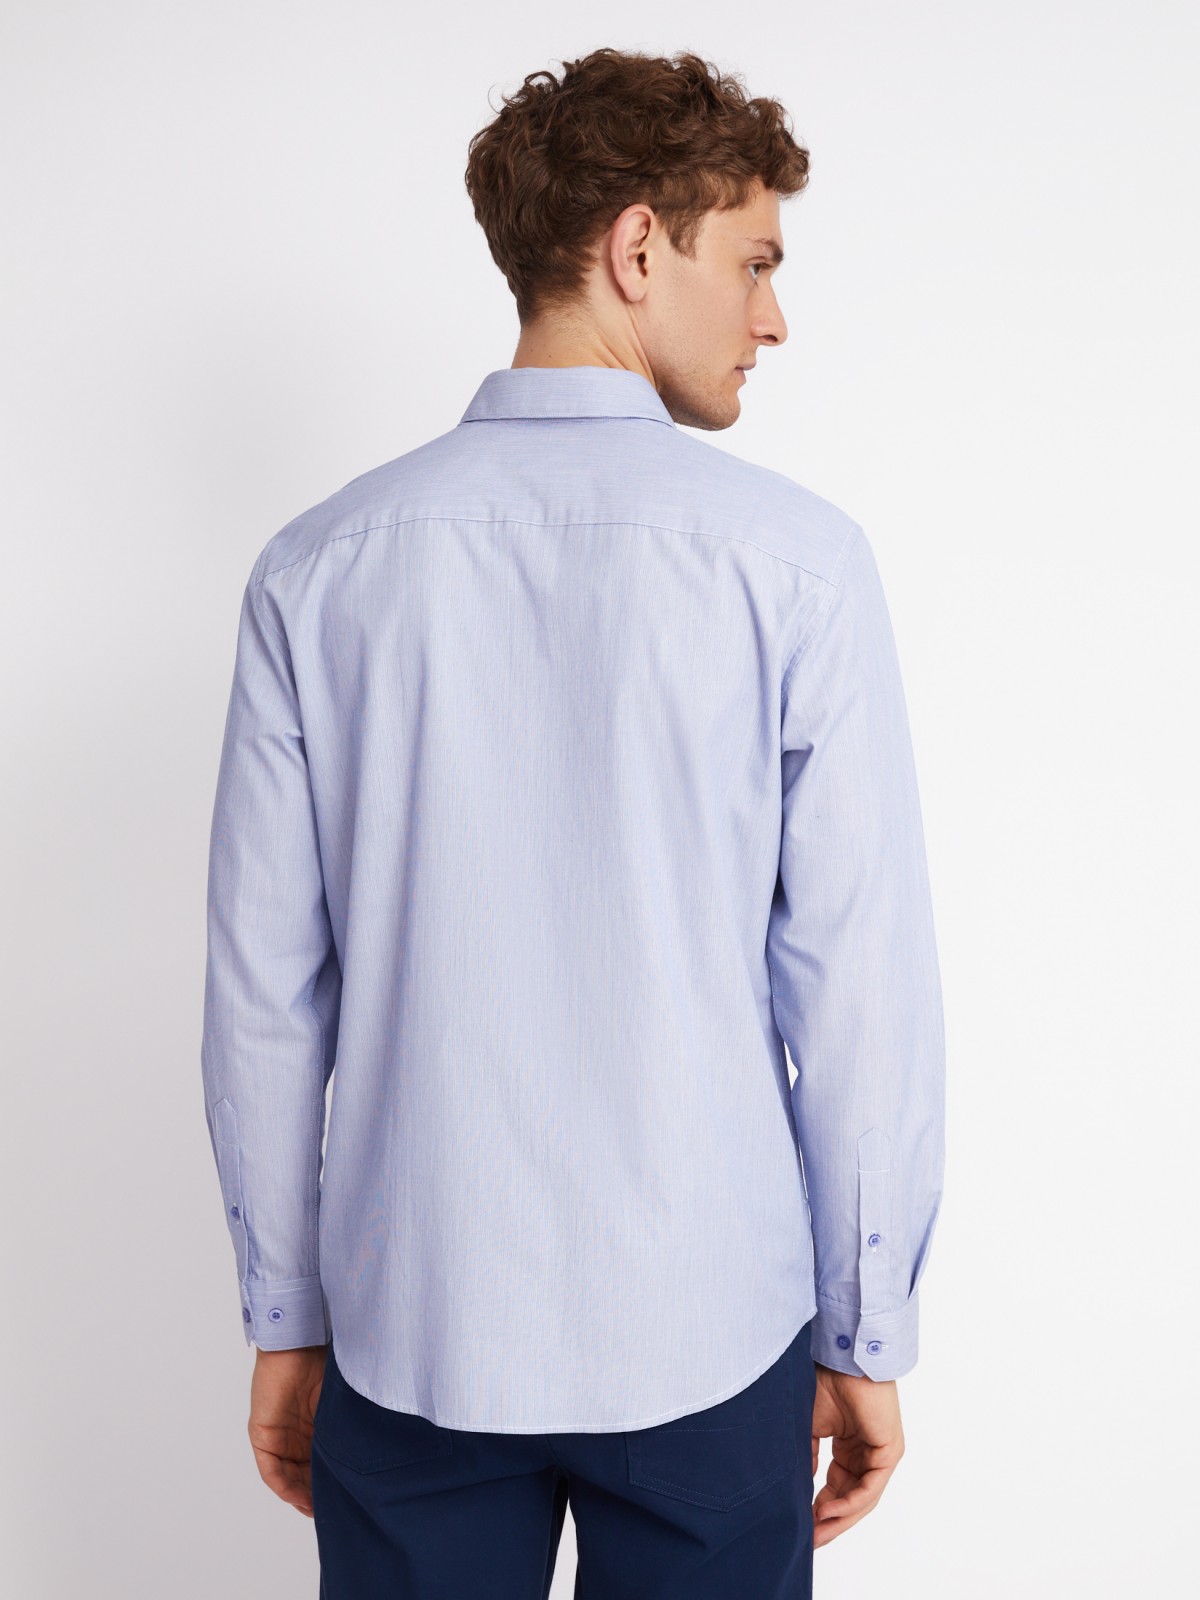 Офисная рубашка прямого силуэта с длинным рукавом и узором в полоску zolla 013322162062, цвет светло-голубой, размер M - фото 6